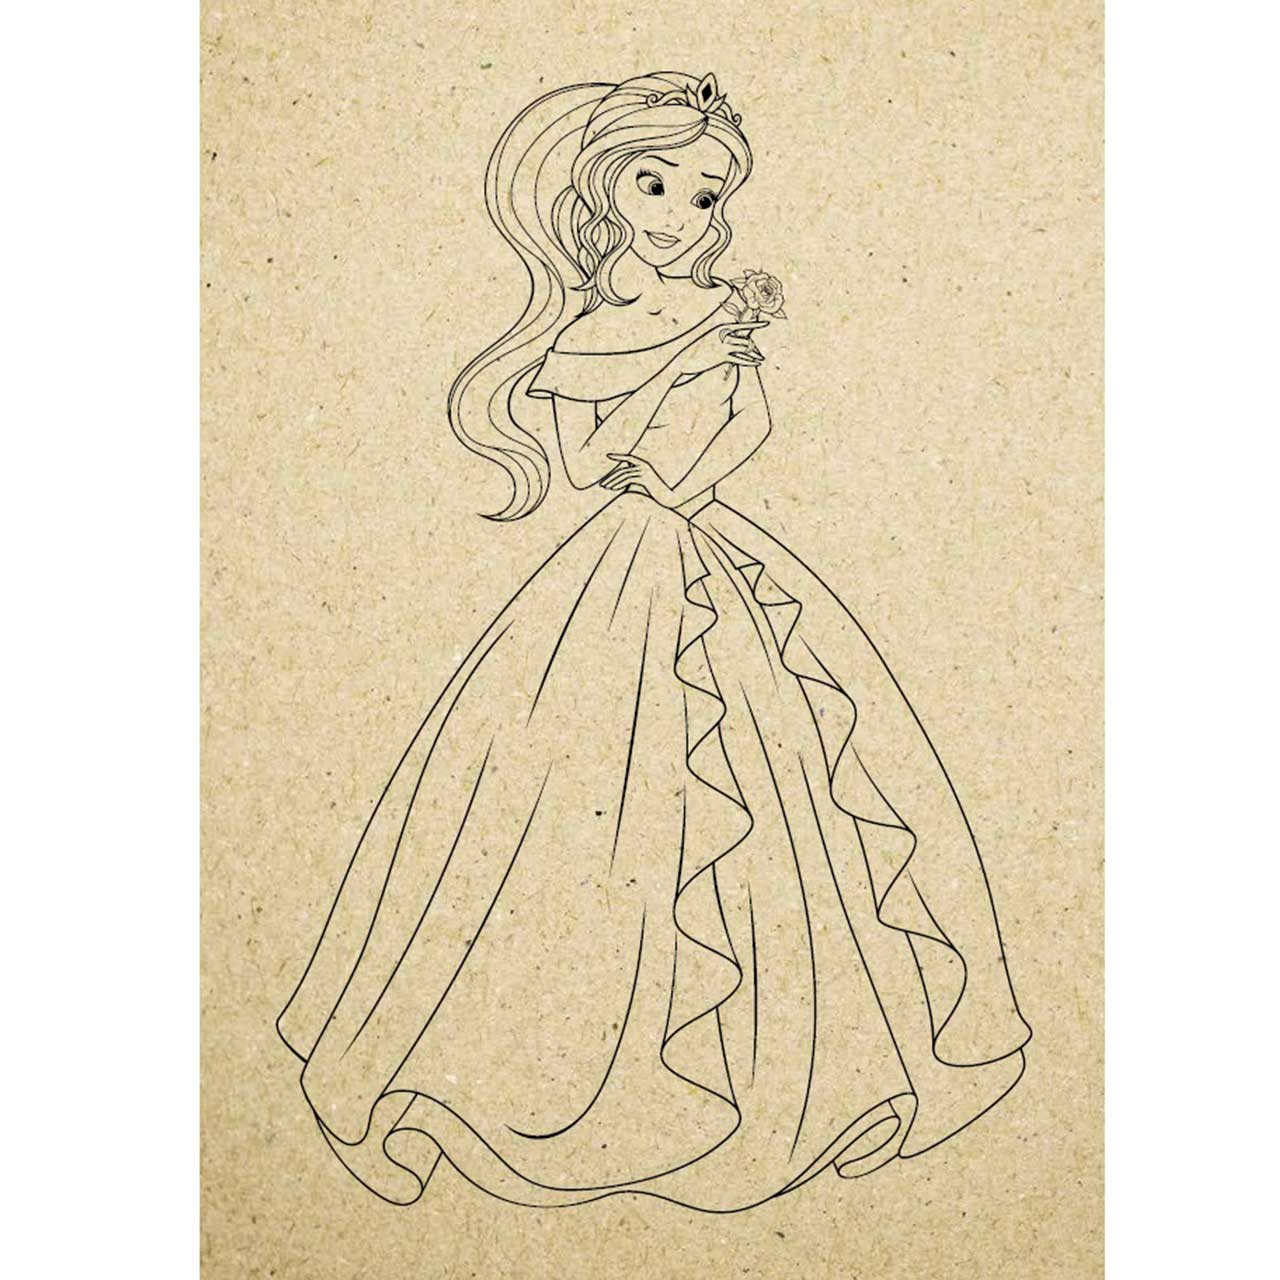 Mein Graspapier Malbuch - Prinzessin